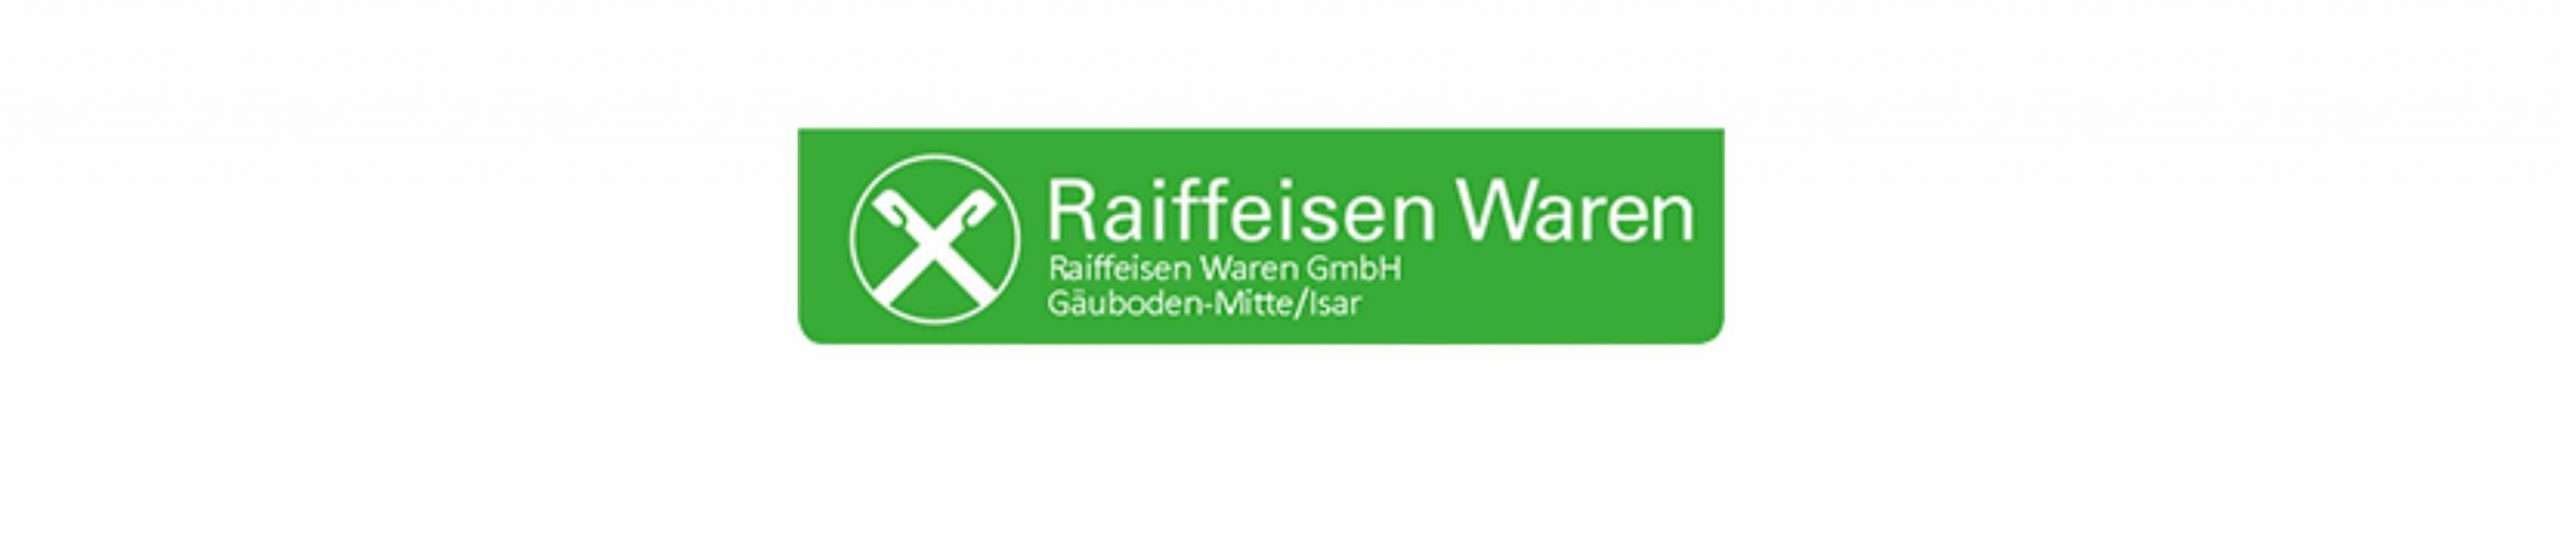 Raiffeisen Waren GmbH Gäuboden-Mitte/Isar - Pilsting